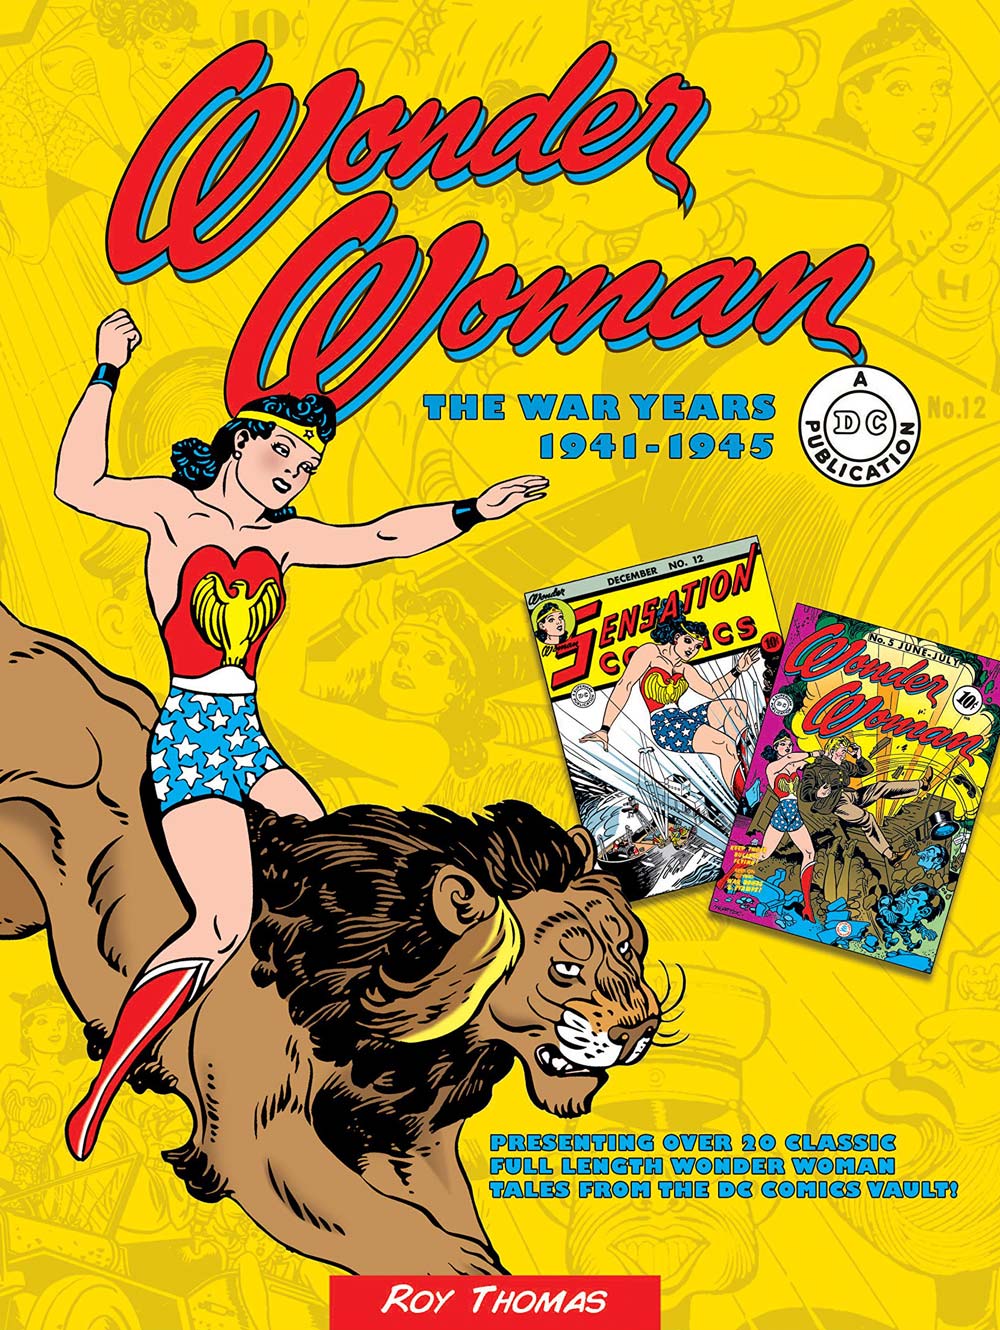 Libri Wonder Woman: Gli Anni Della Guerra - 1941-1945 NUOVO SIGILLATO, EDIZIONE DEL 03/12/2020 SUBITO DISPONIBILE